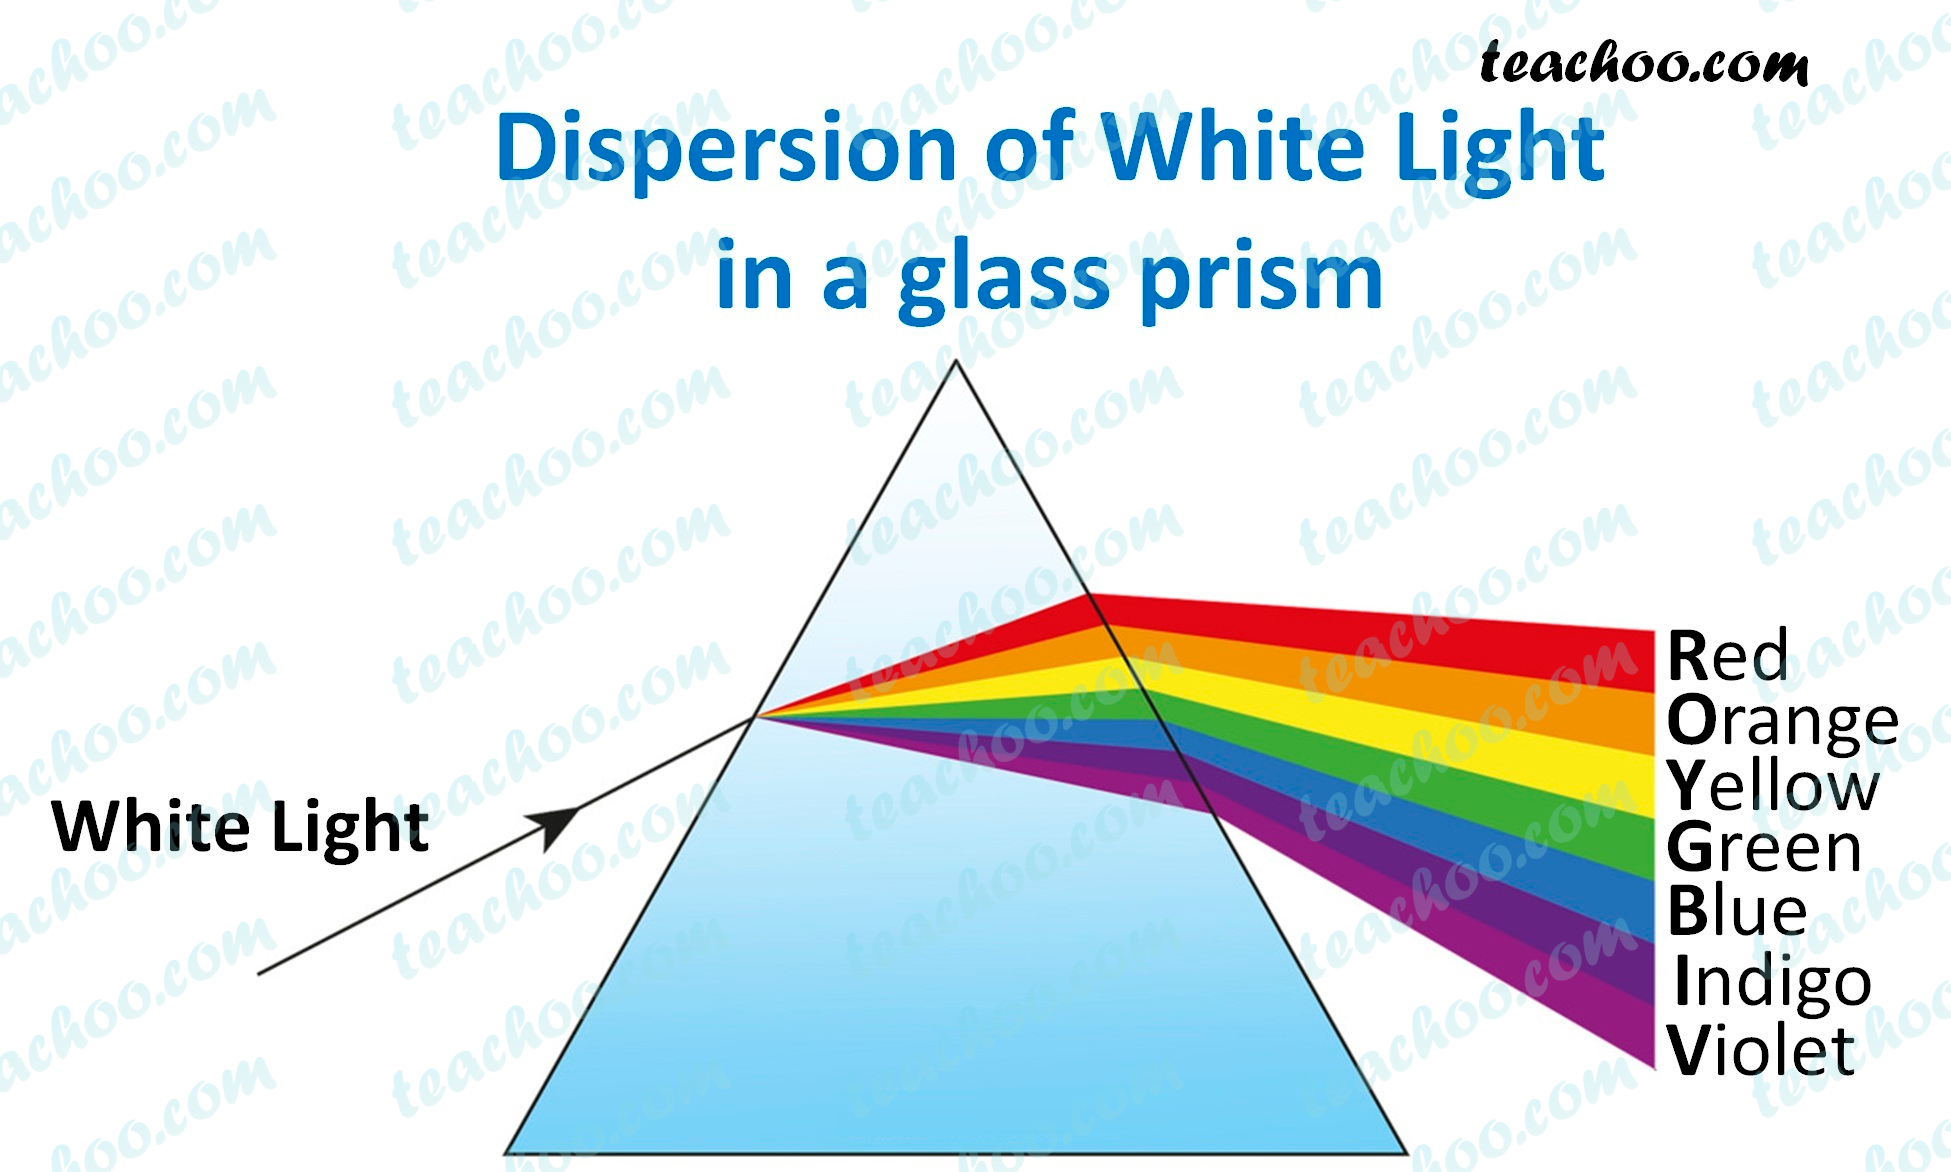 dispersion-of-white-light-in-glass-prism---teachoo.jpg